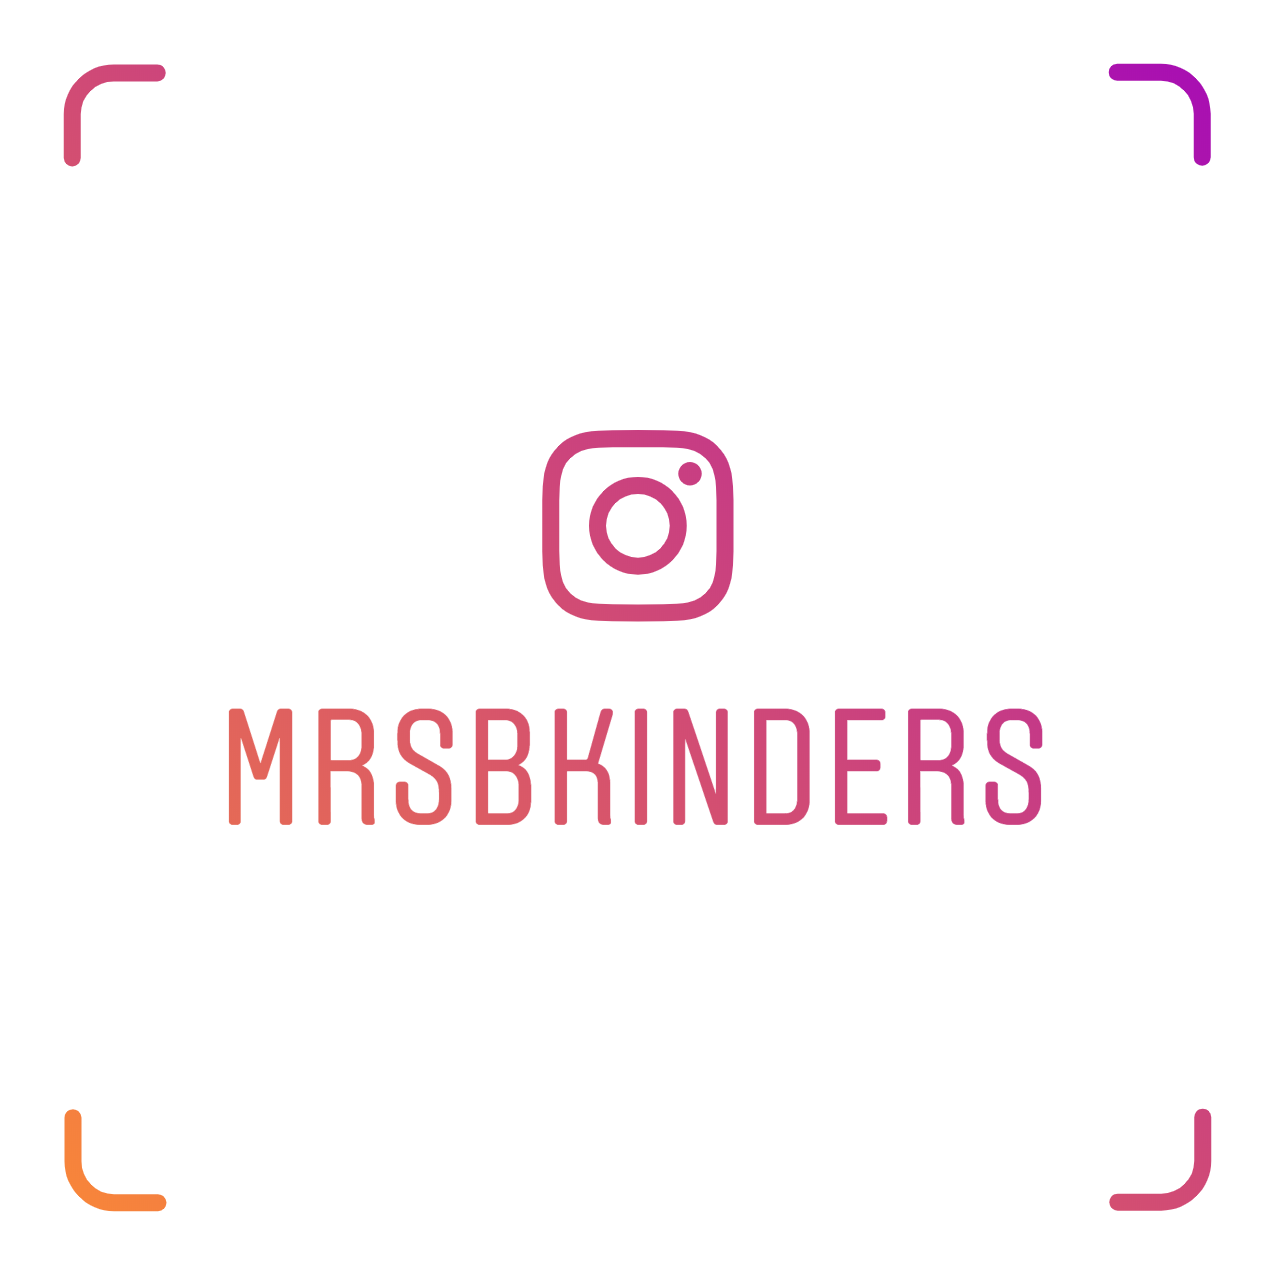 Follow me on Instagram!